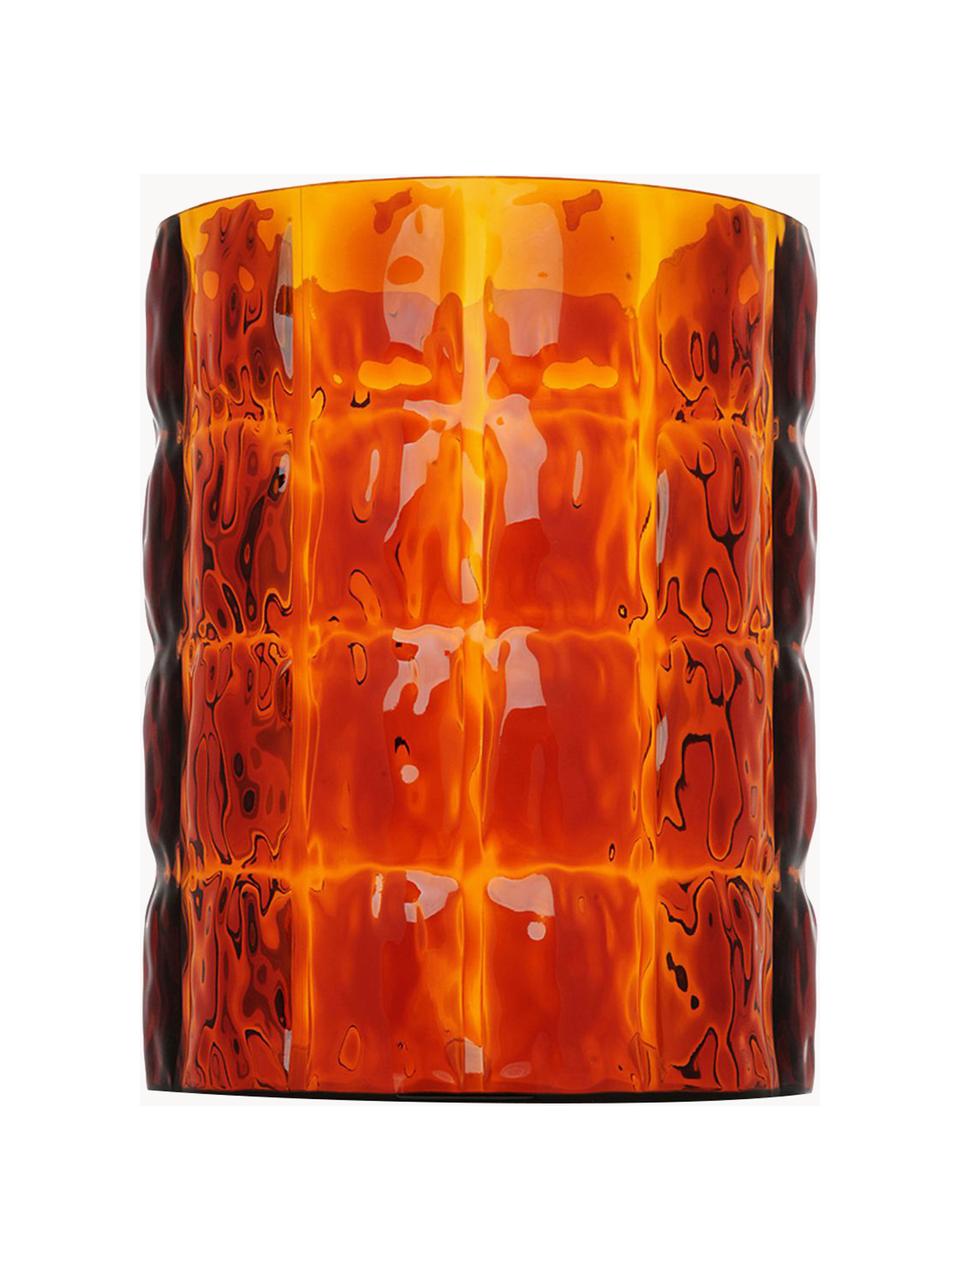 Grand vase Matelasse, haut. 30 cm, Verre acrylique, Orange, transparent, Ø 23 x haut. 30 cm